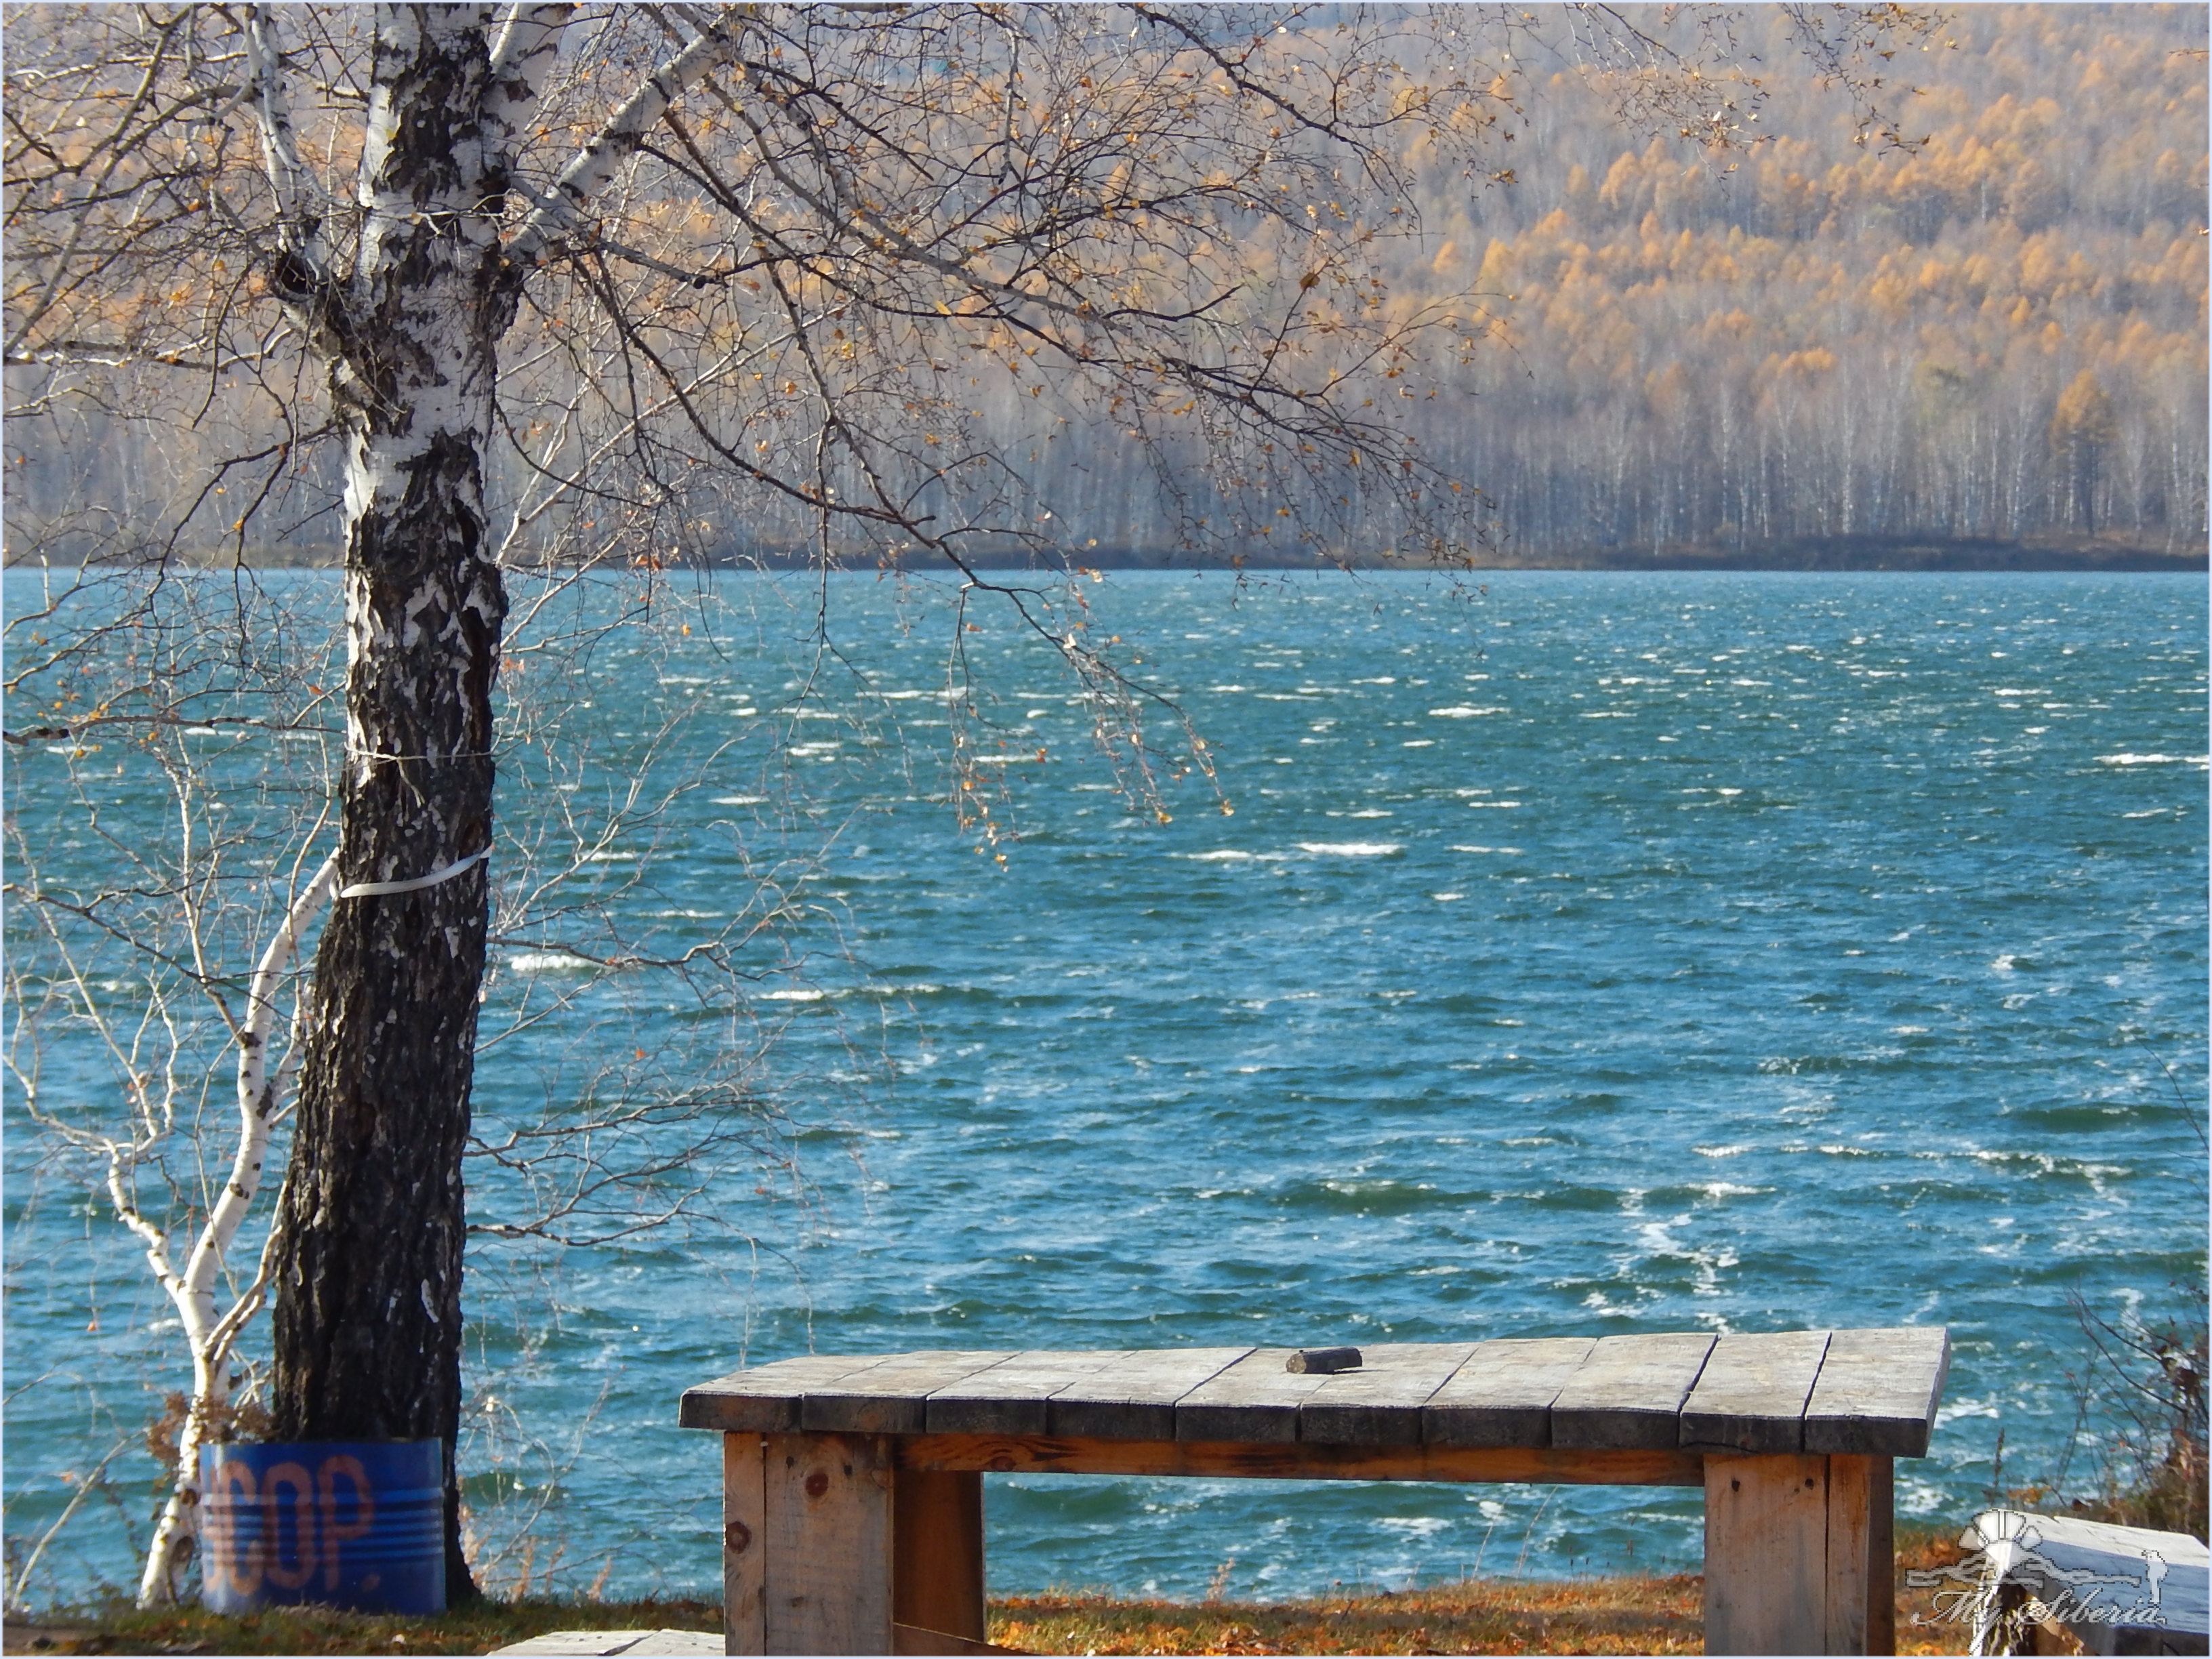 Линево озеро фото